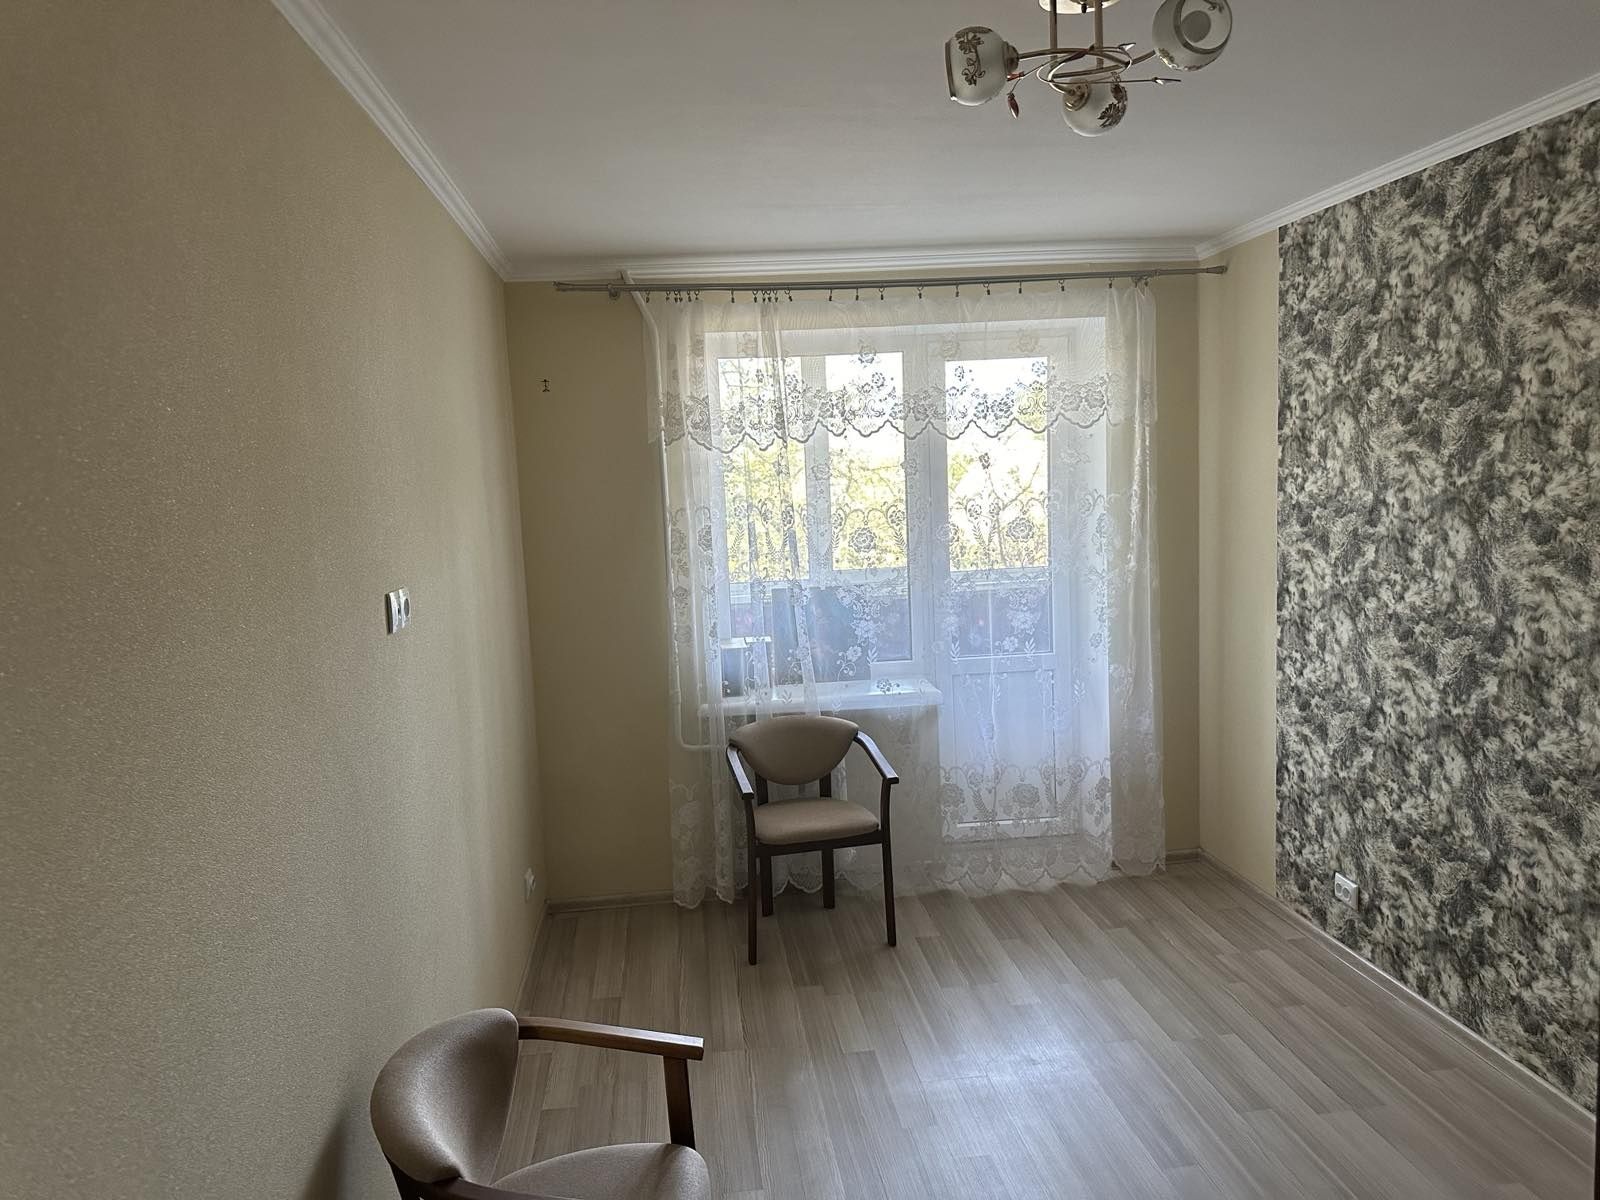 Продам чотирикімнатну квартиру в цетрі Чернігова по вулиці Самострова.